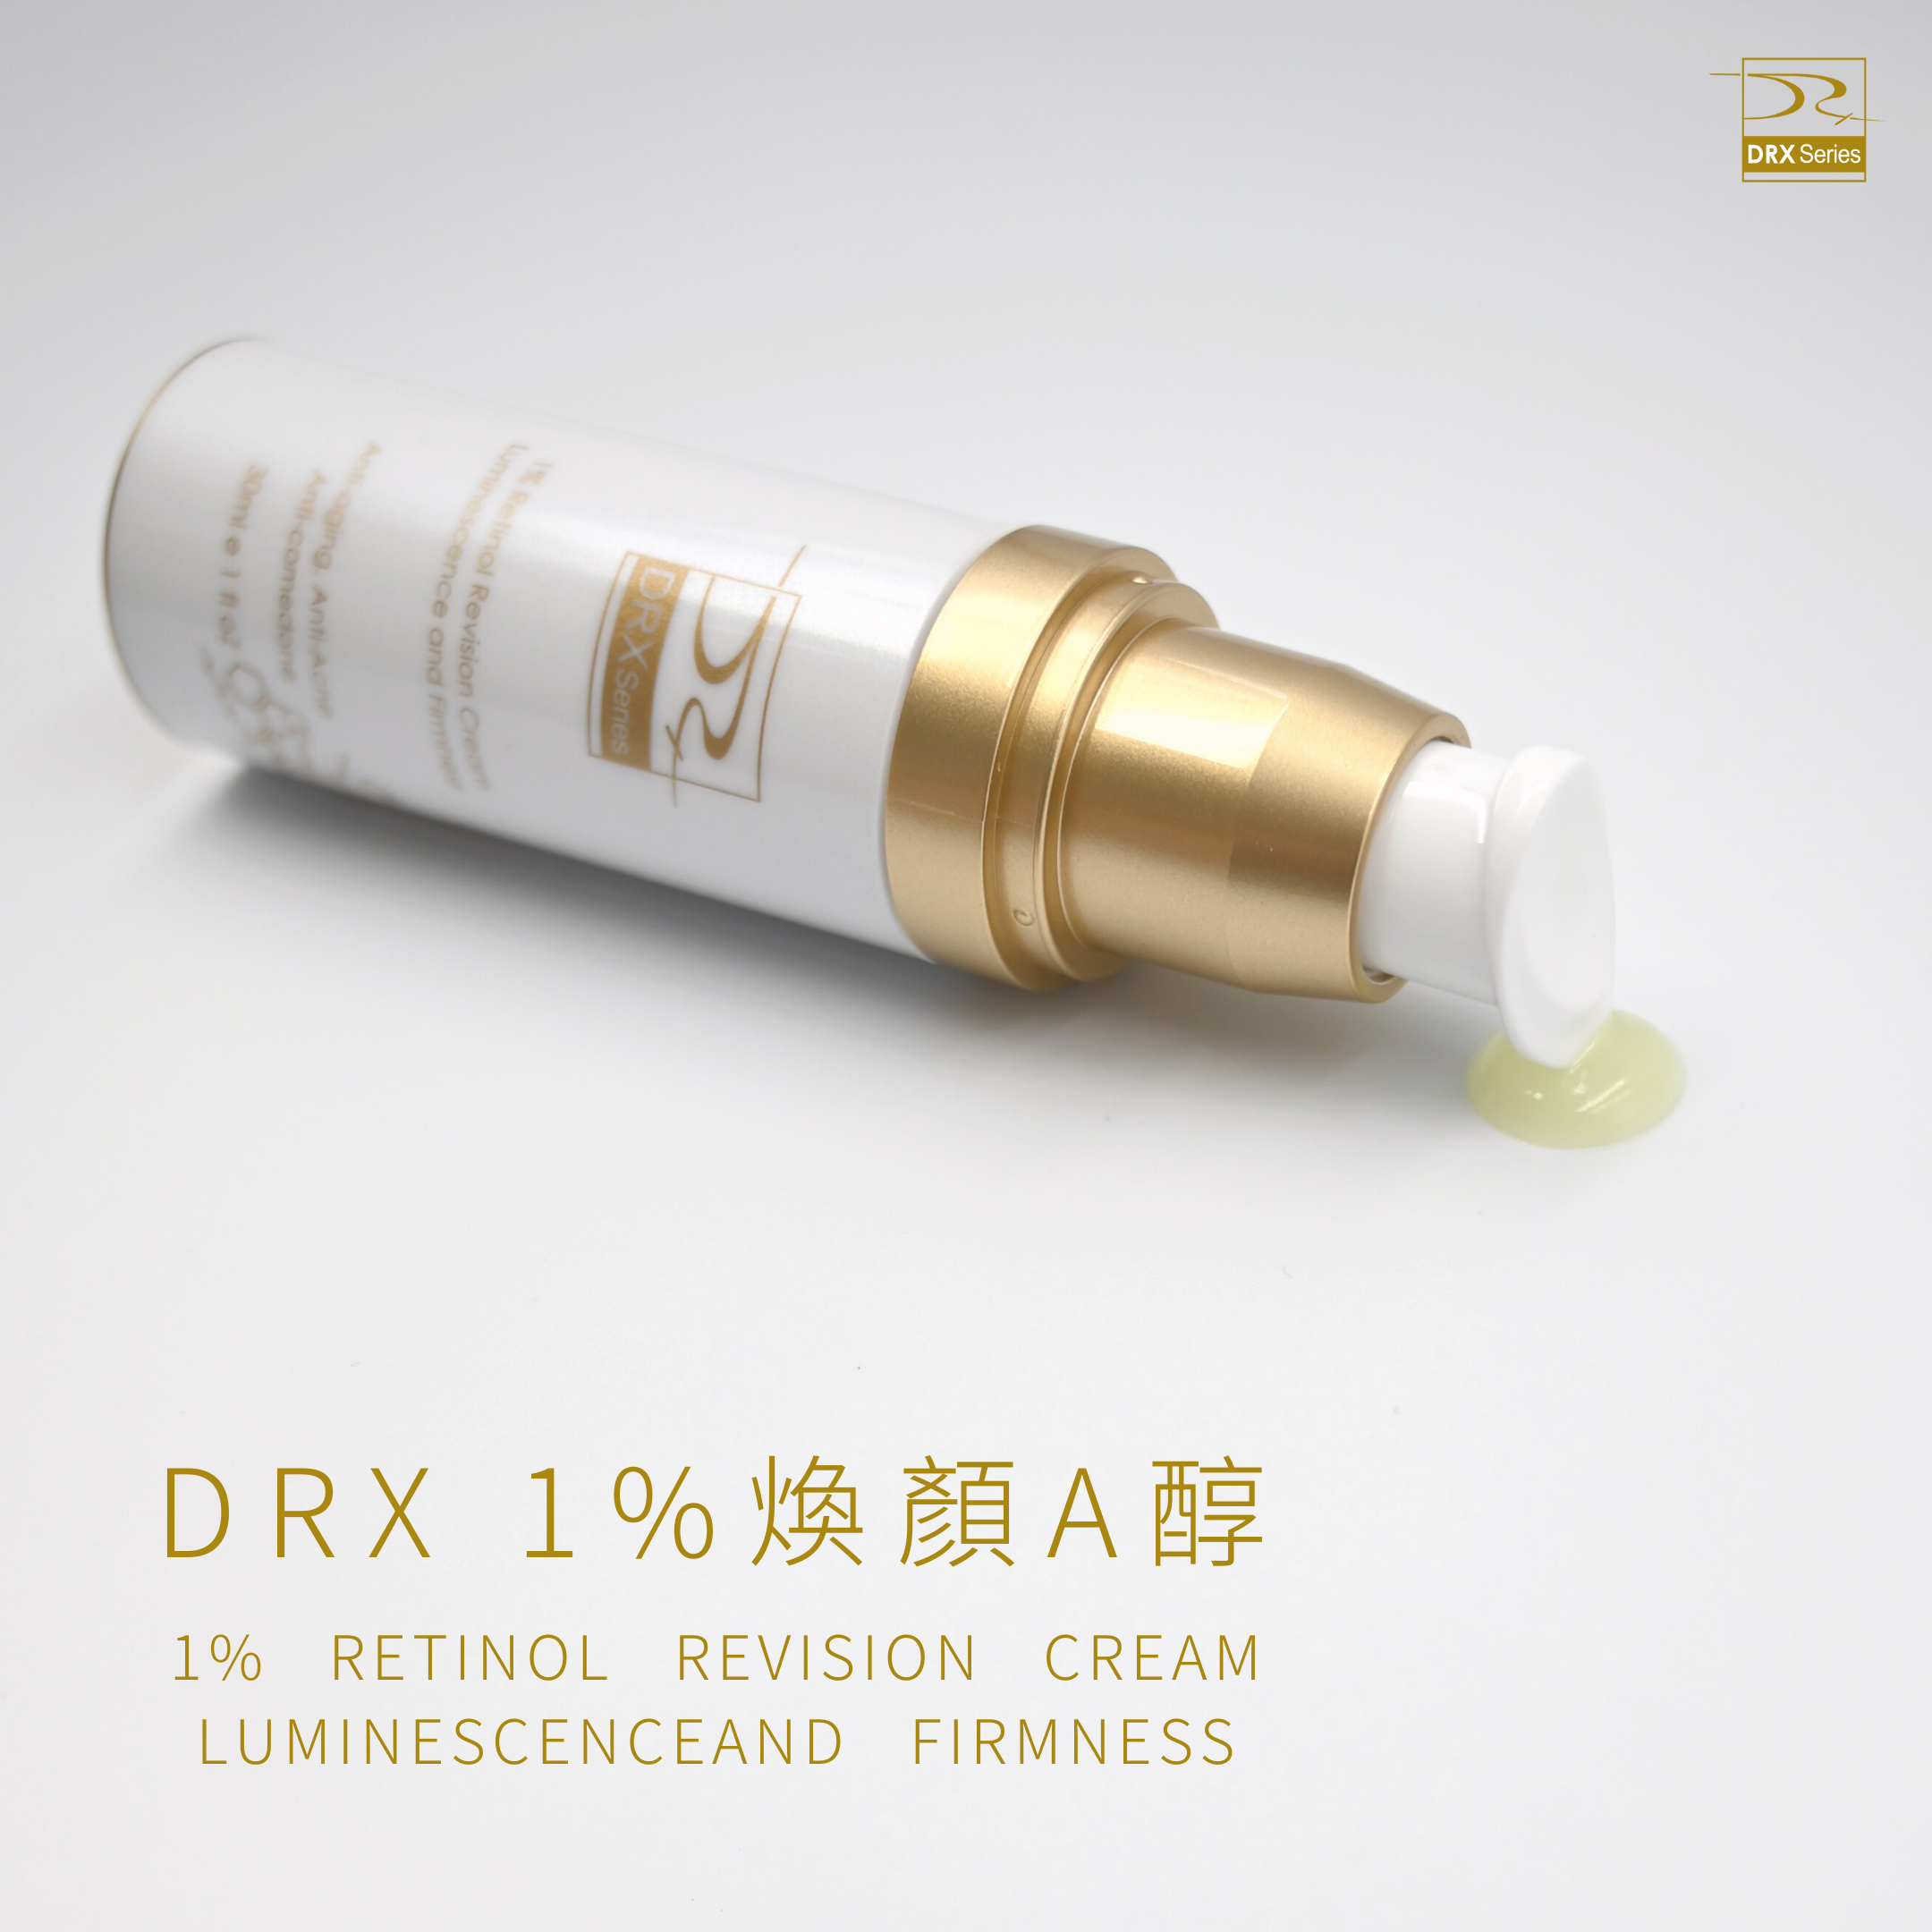 DRX達特仕給您最好的煥膚產品，DRX達特仕的DRX 1%煥顏A醇，解決您的肌膚問題，可以延緩衰老、改善膚質、改善粉刺、改善青春痘、改善皮膚暗沈、改善膚色不均，透過特殊技術，使皮膚代謝效果更上一層樓！